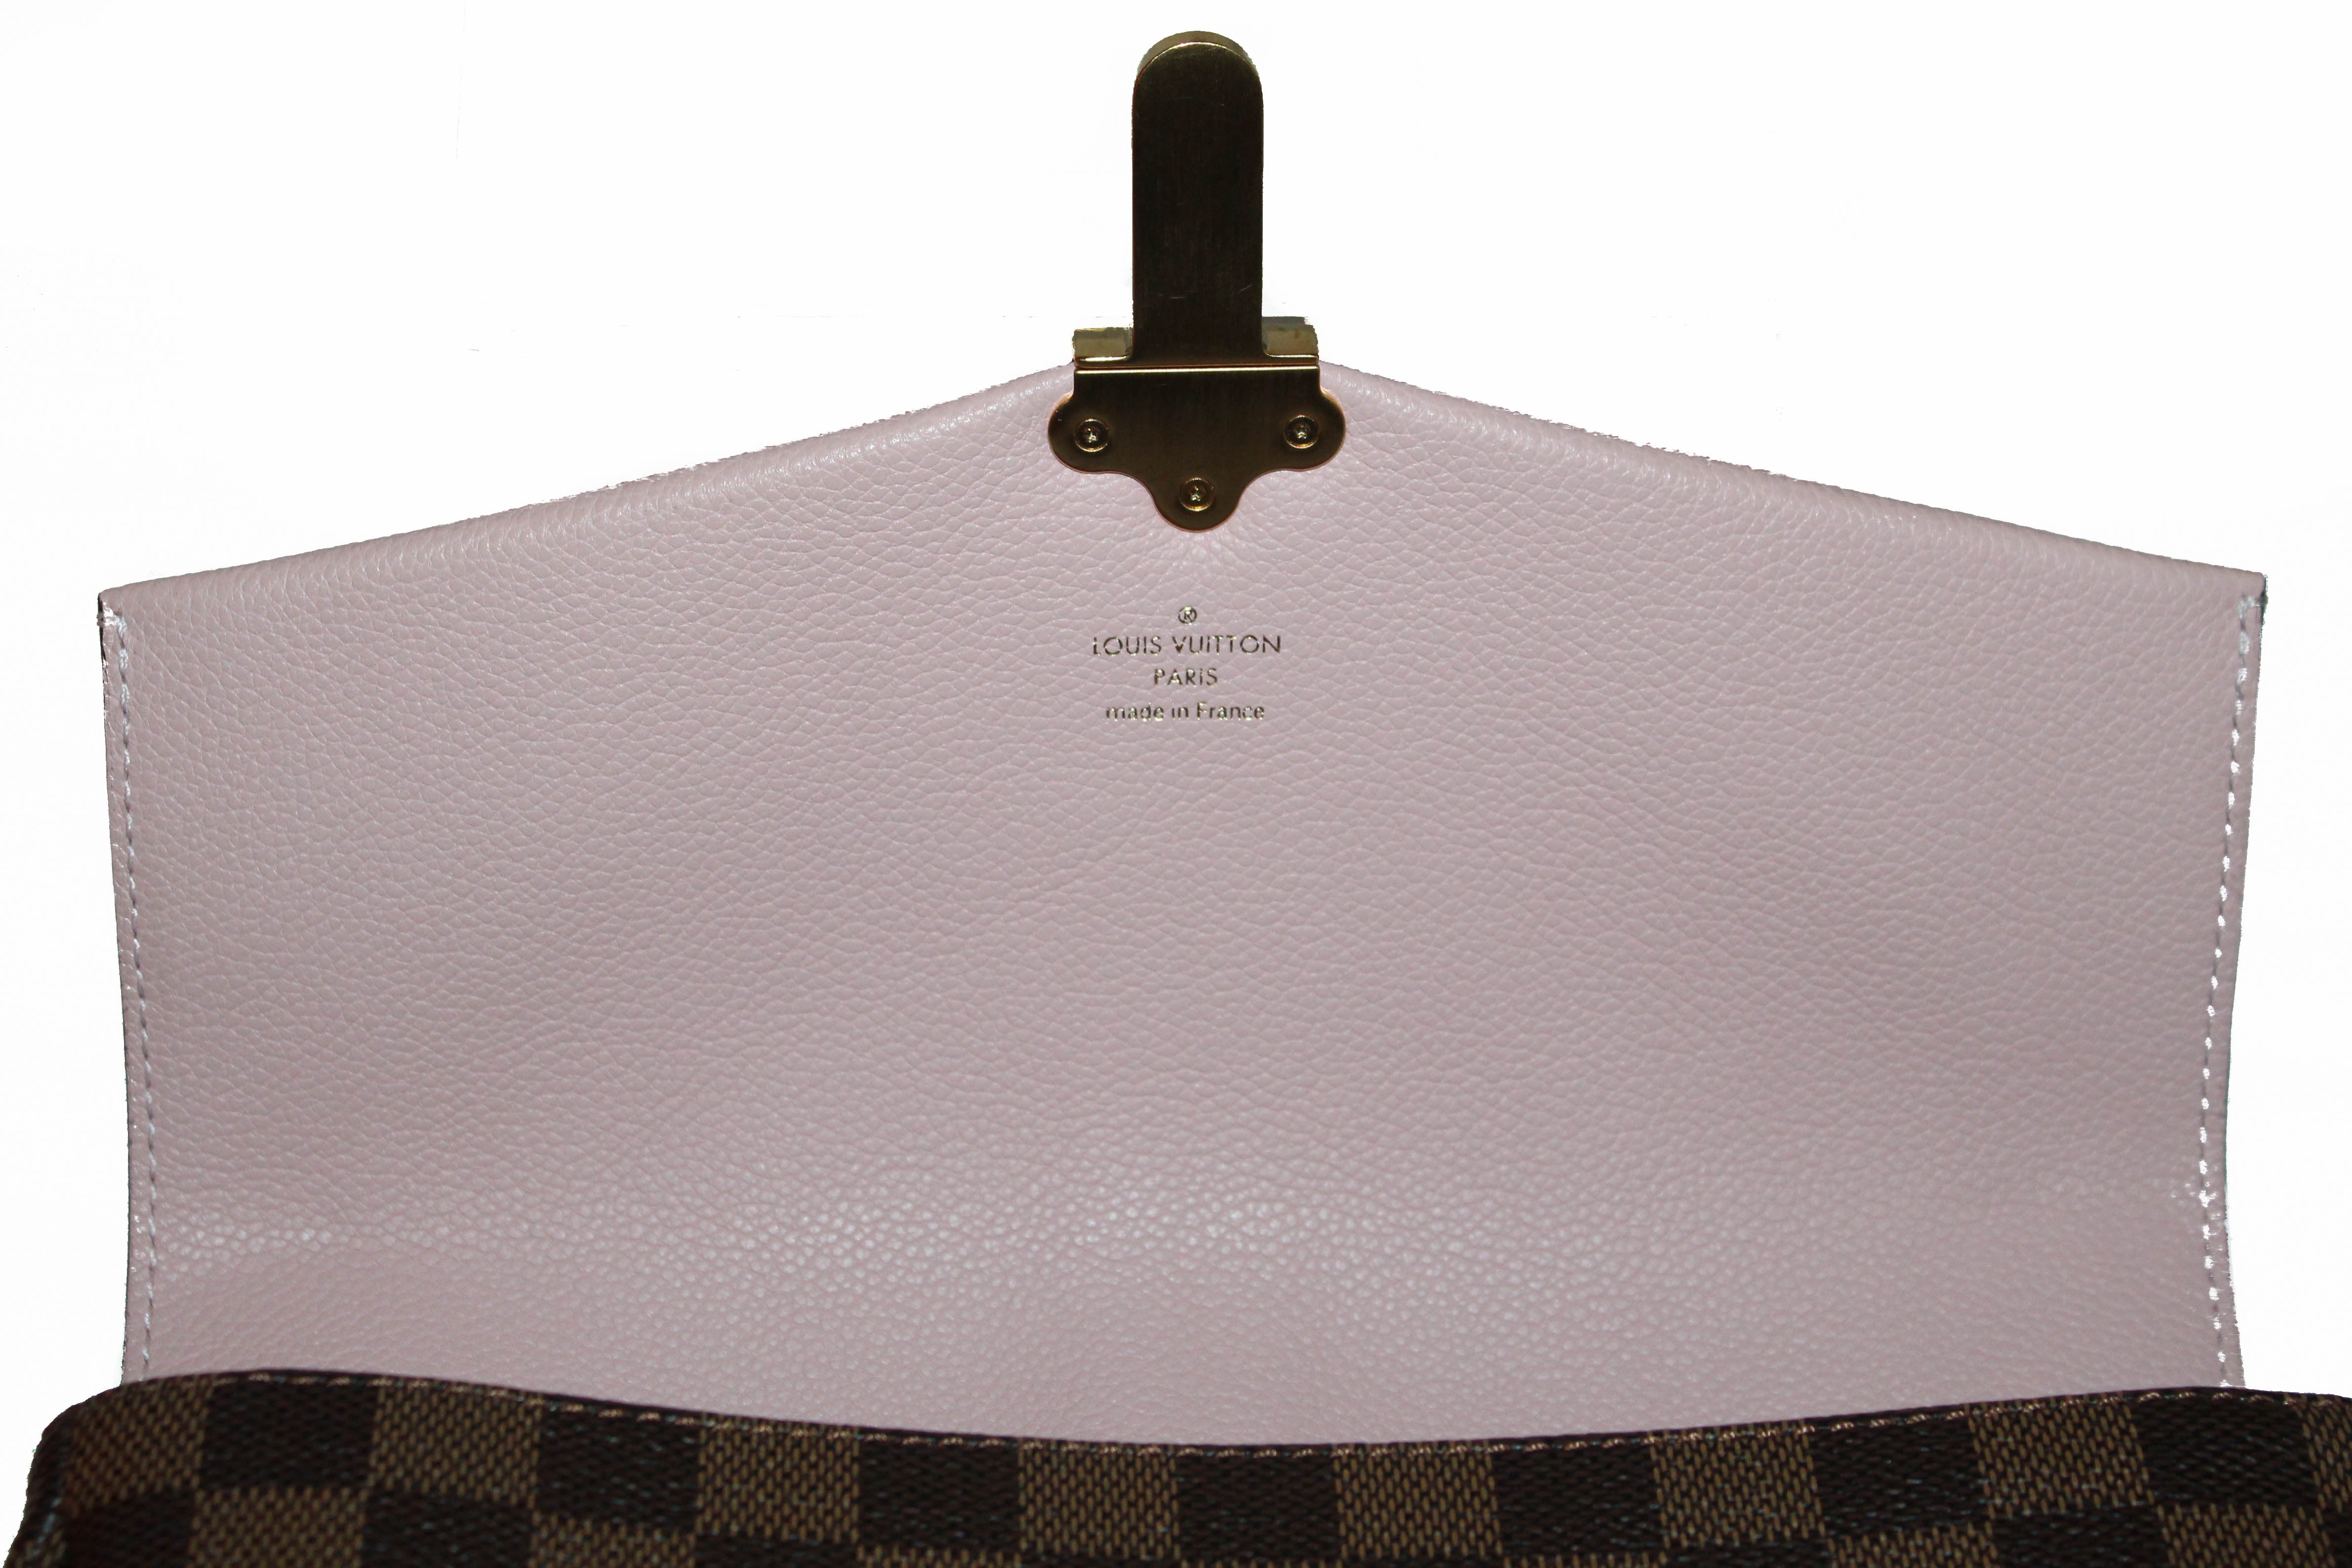 Authentic Louis Vuitton Damier Ebene Pink Clapton Cross Body Bag